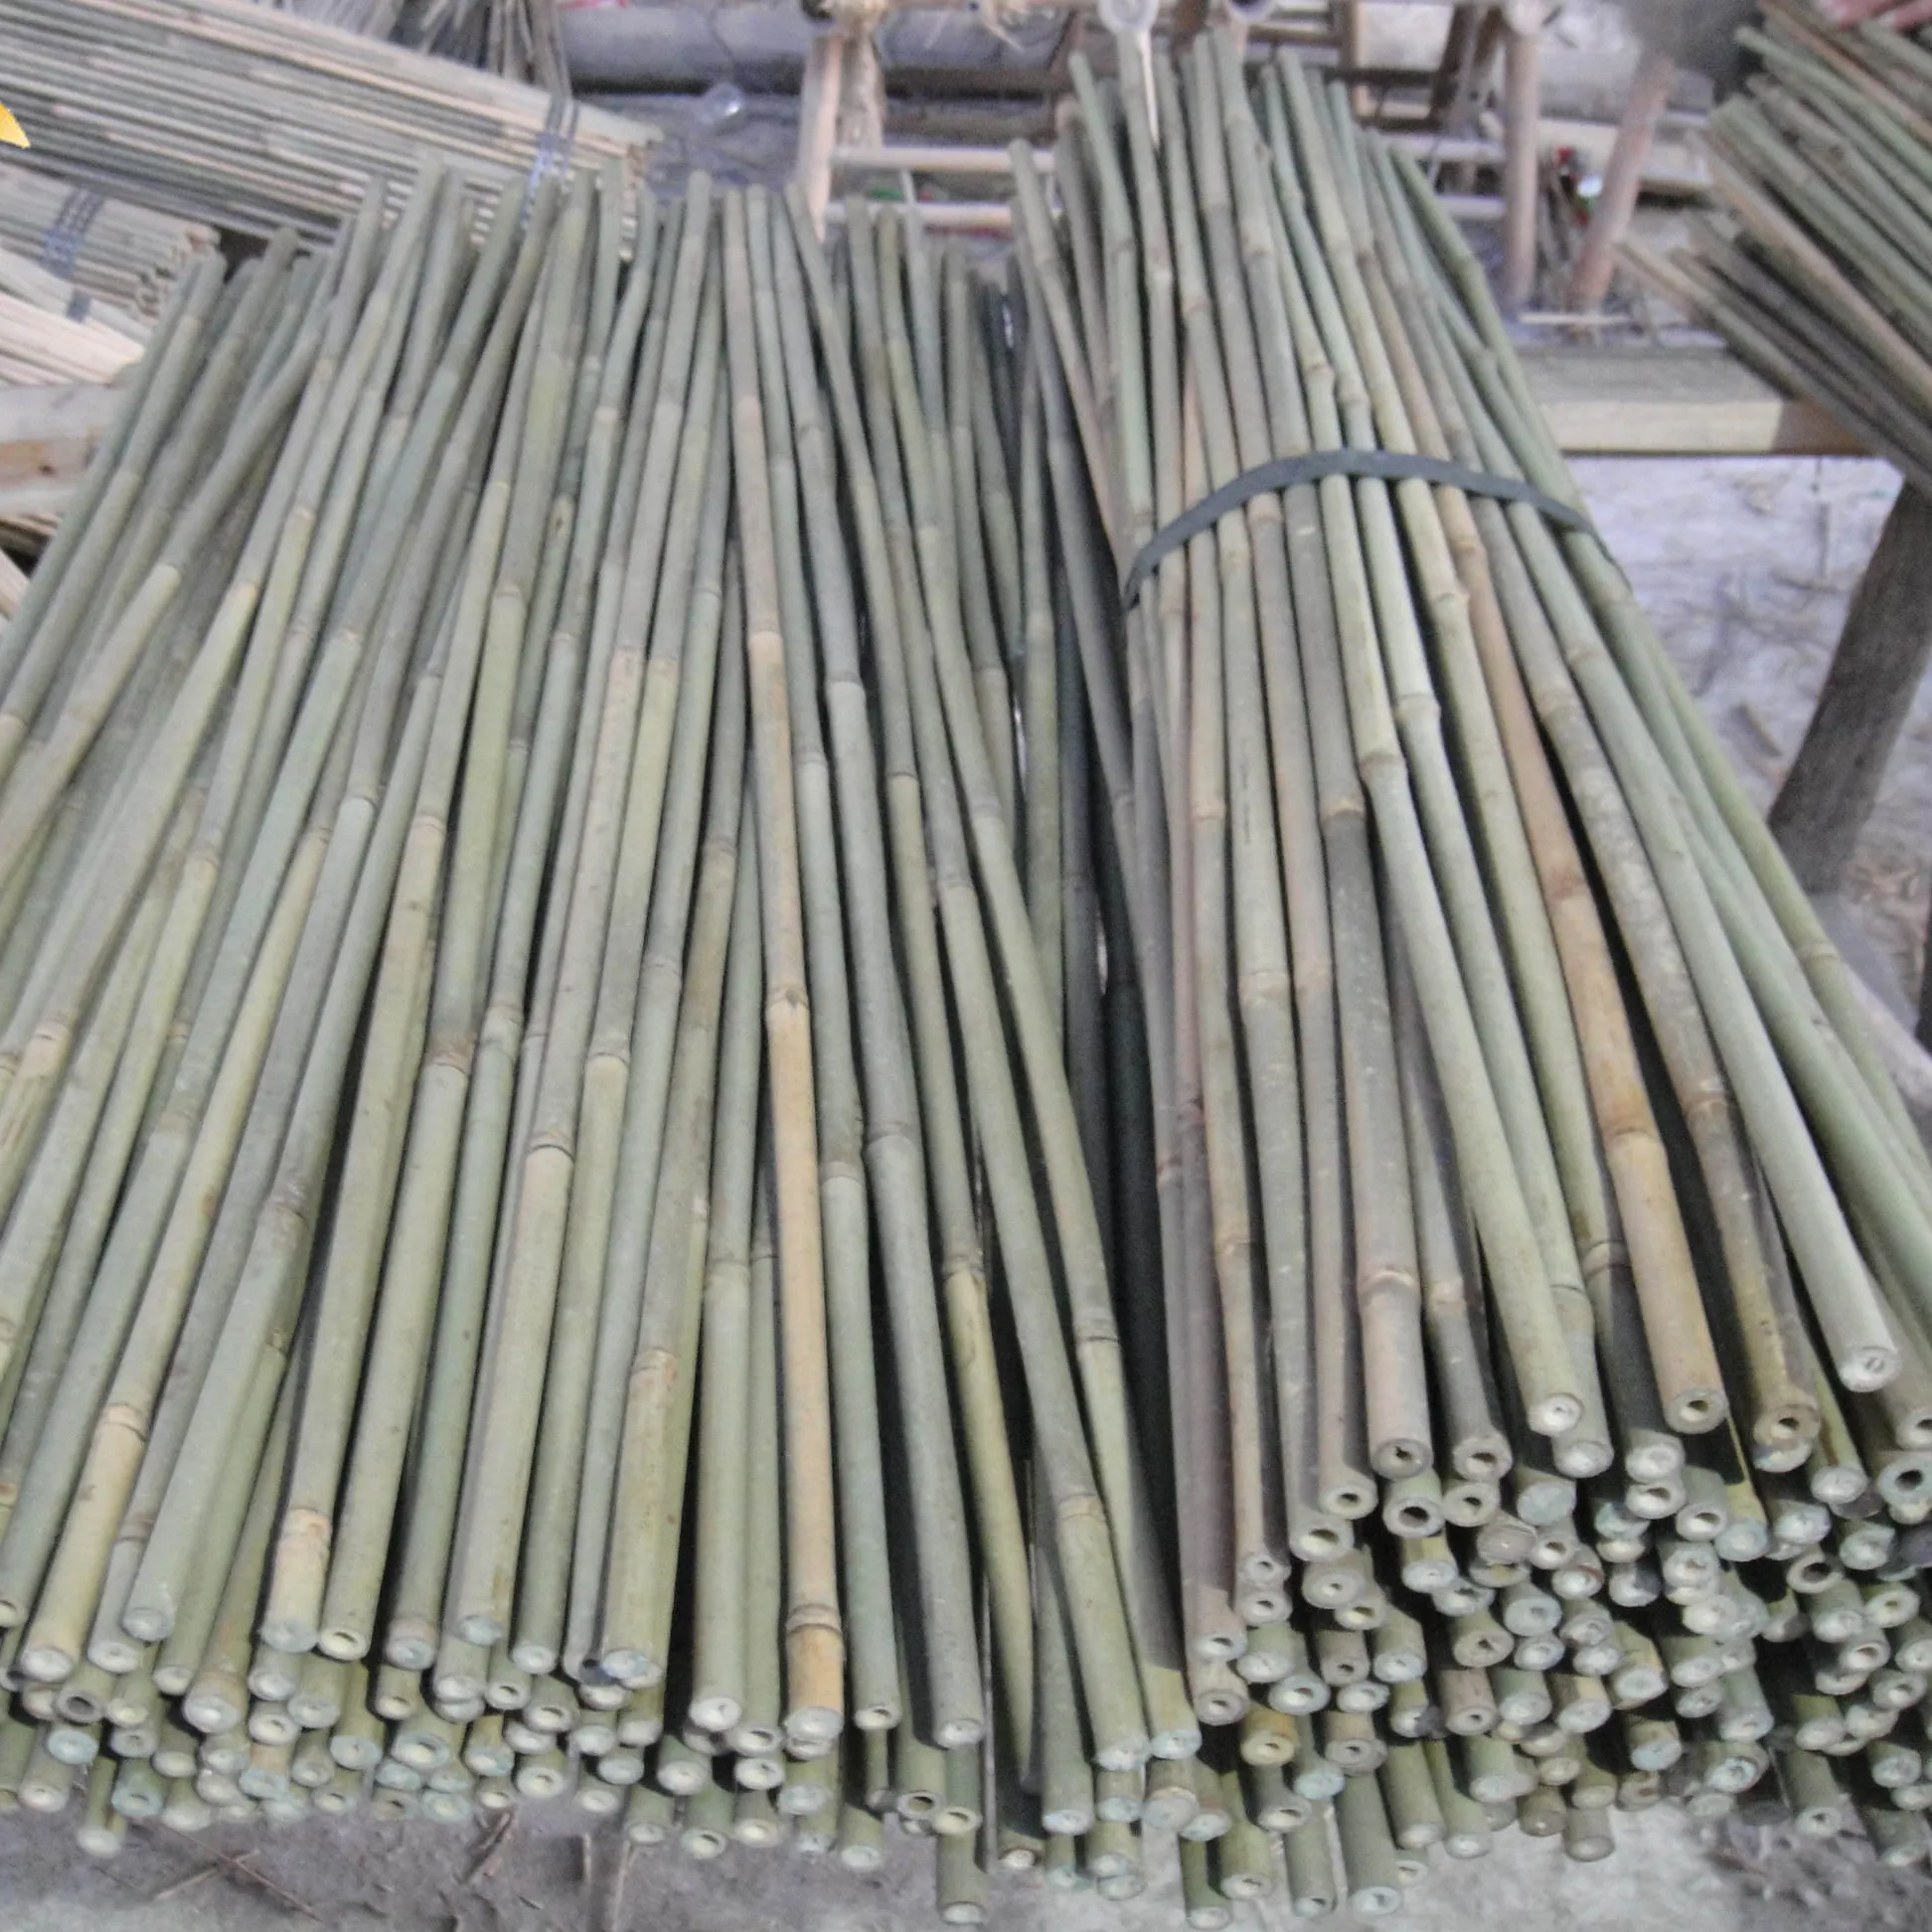 Garten dekoration bambus canes 105cm 12-14mm